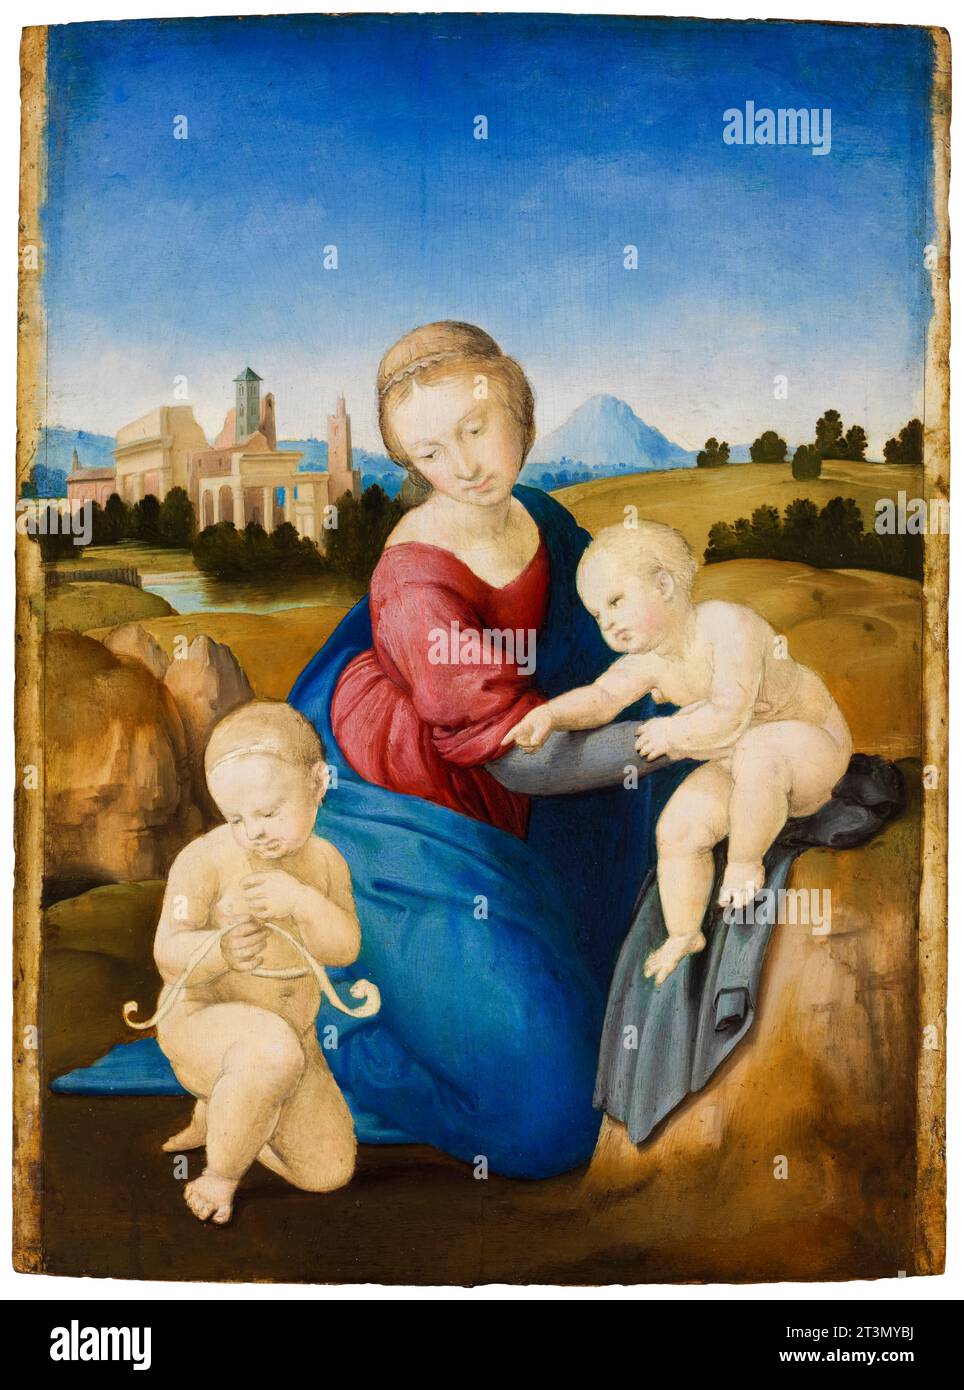 Raffaello Sanzio de Urbino detto Raffaello, Madonna col bambino con San Giovanni Battista (la Madonna di Esterházy), dipinto ad olio e tempera su tavola, intorno al 1508 Foto Stock